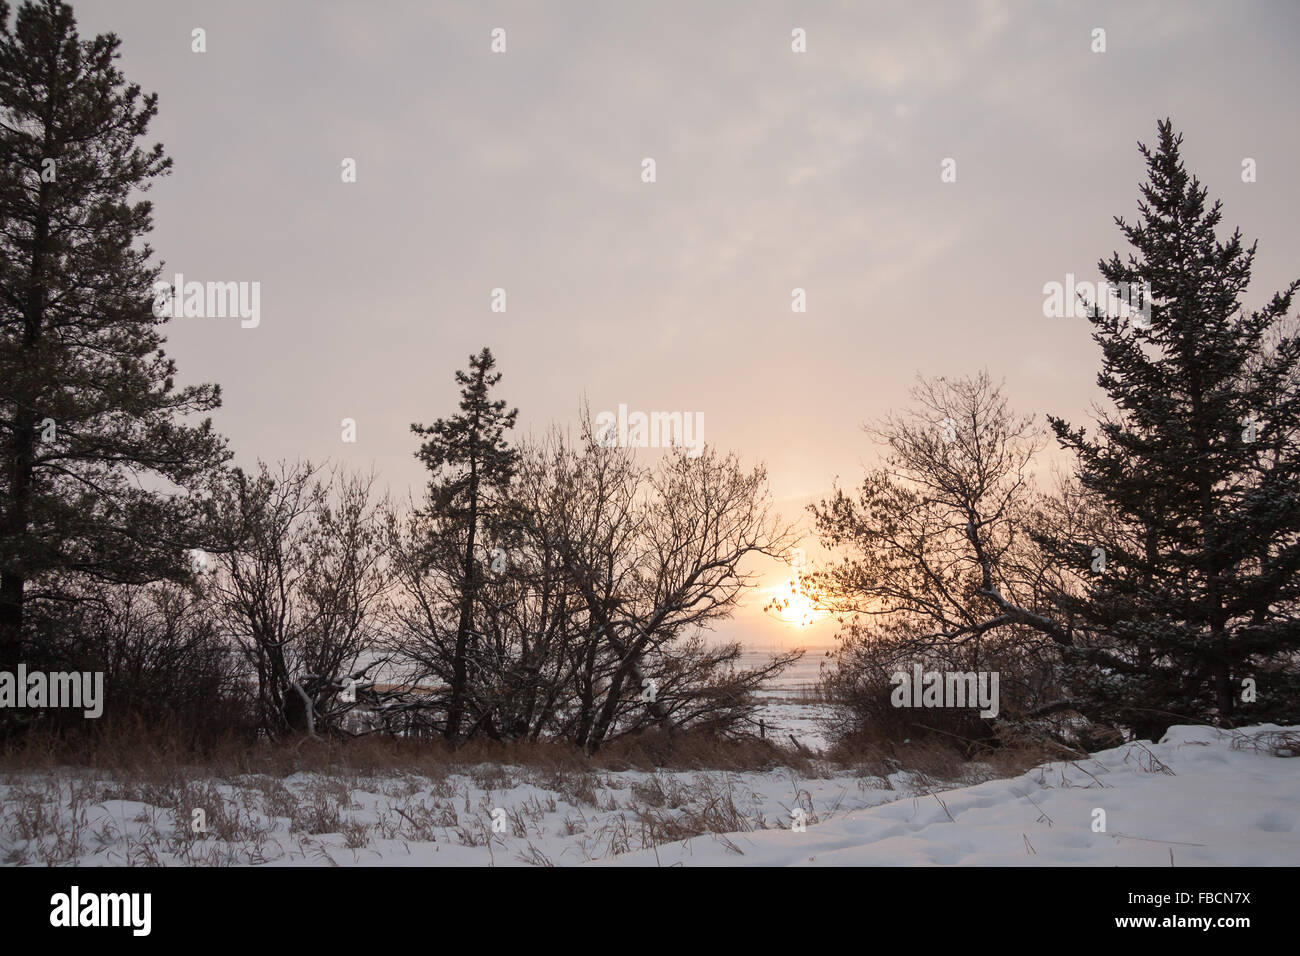 Outdoor paesaggio invernale con neve sul terreno Foto Stock